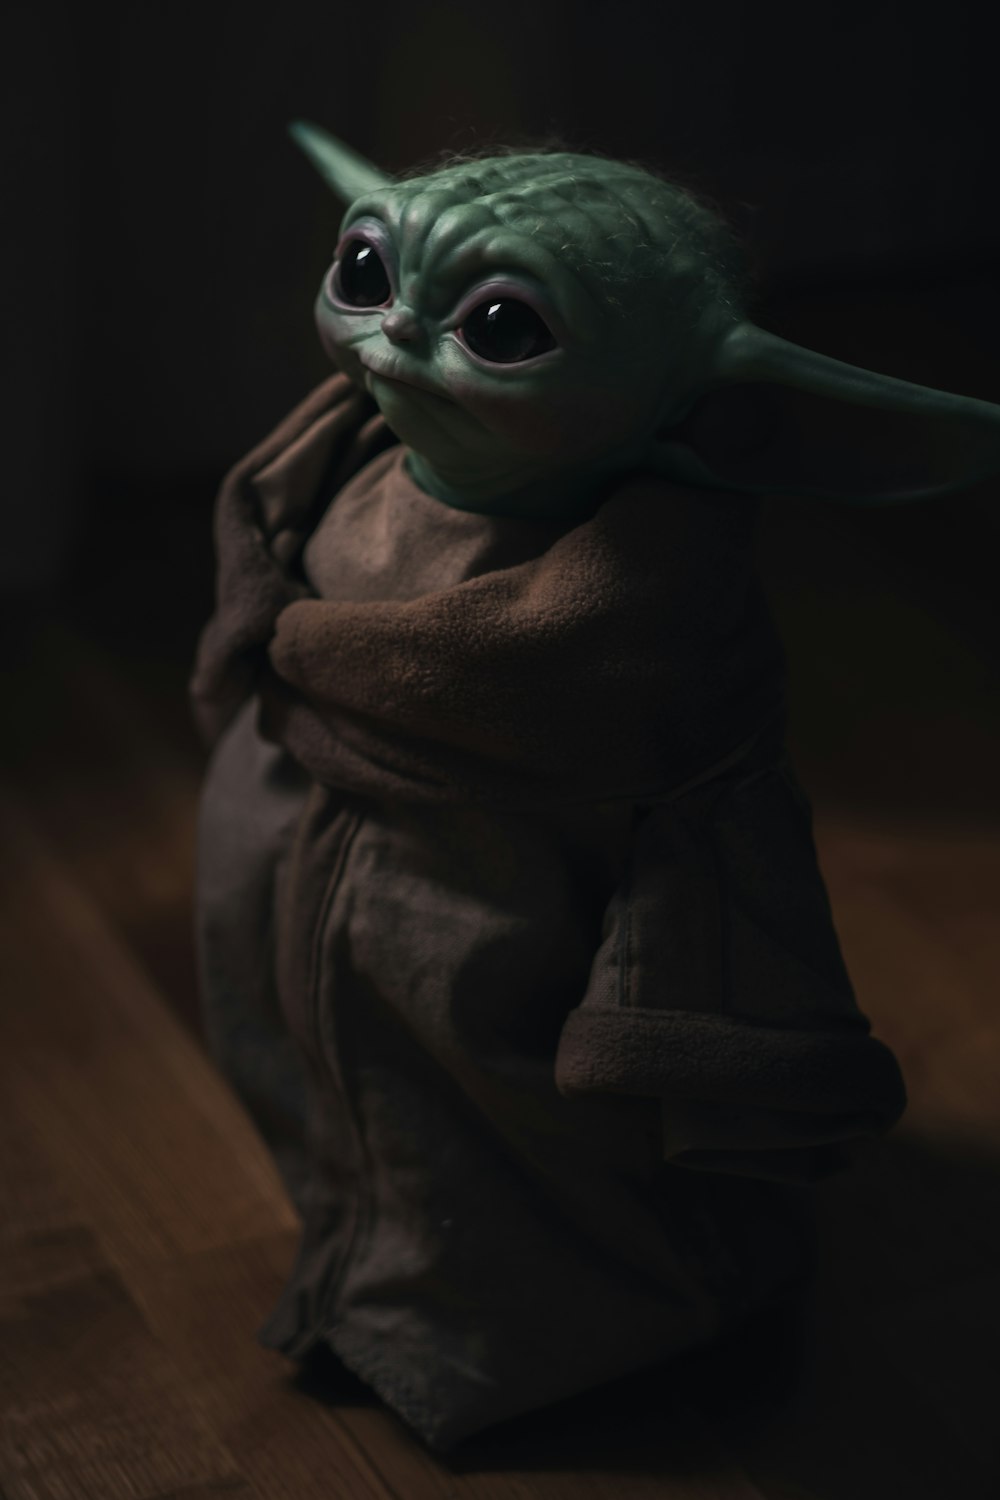 Más de 1K imágenes de Baby Yoda | Descargar imágenes gratis en Unsplash